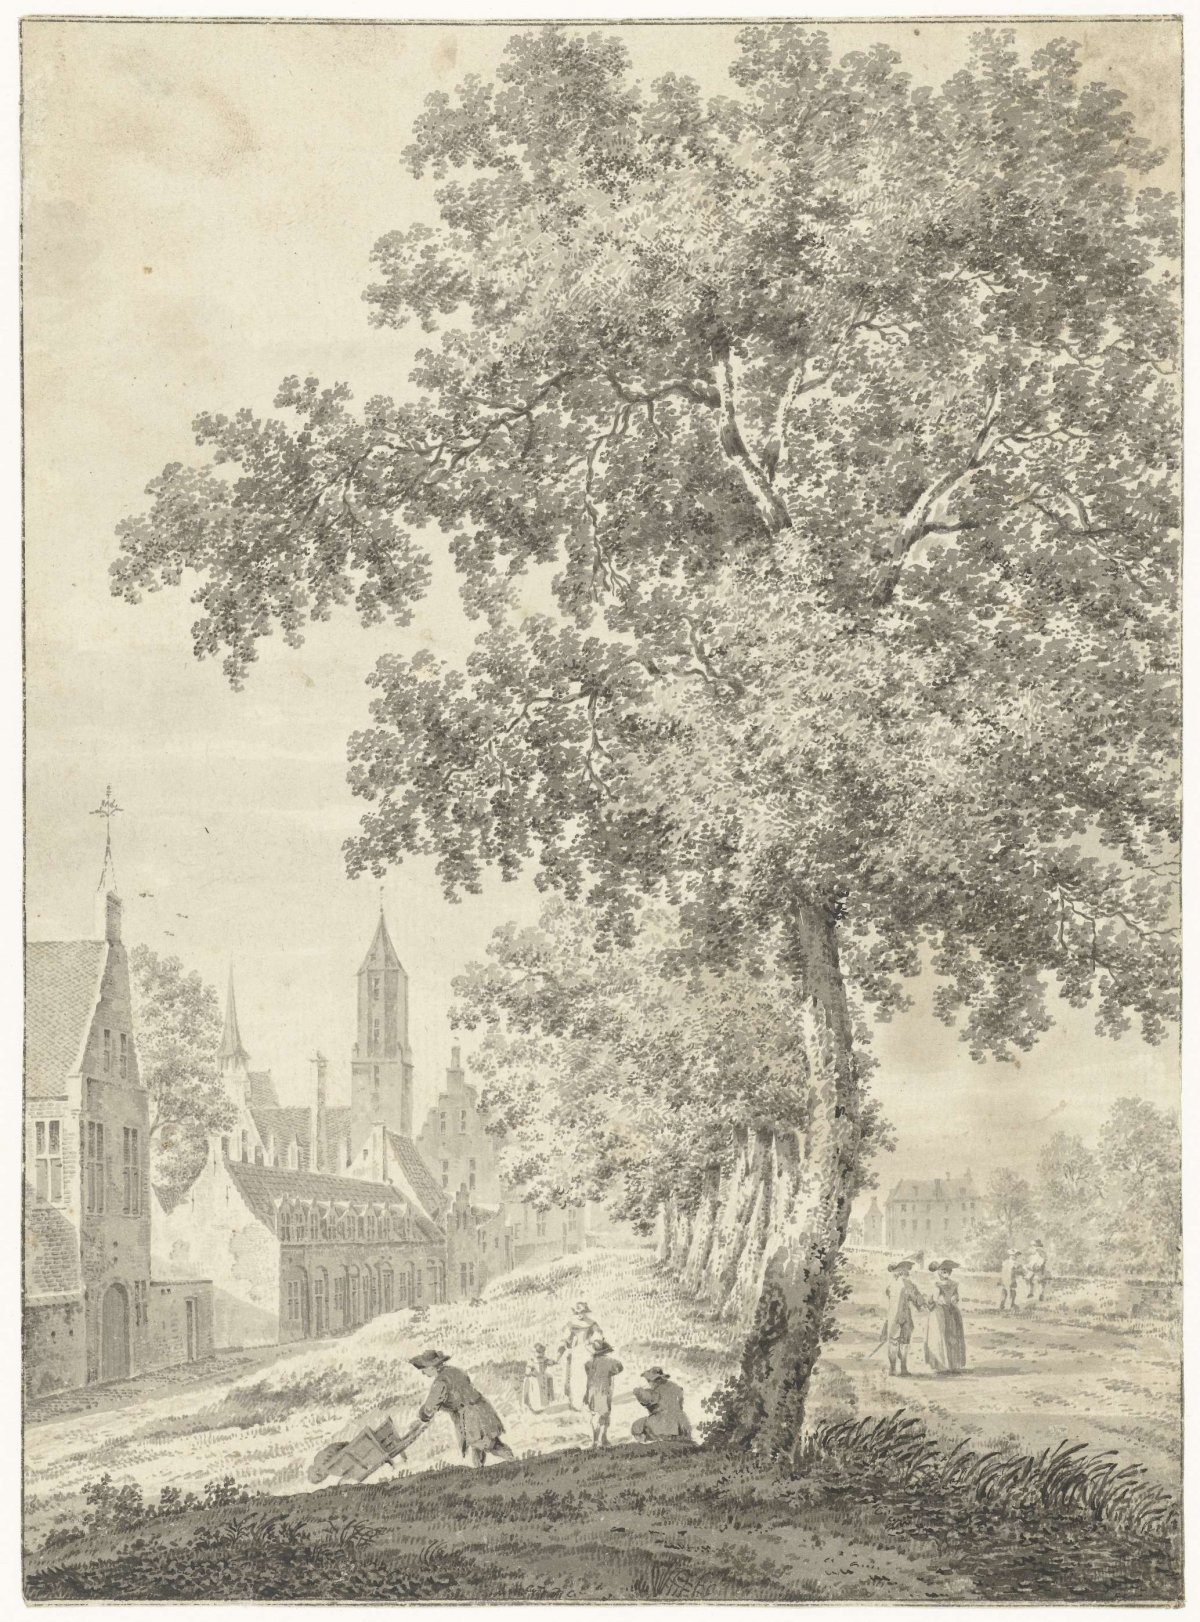 On the city wall in Utrecht, Pieter Jan van Liender, 1737 - 1779